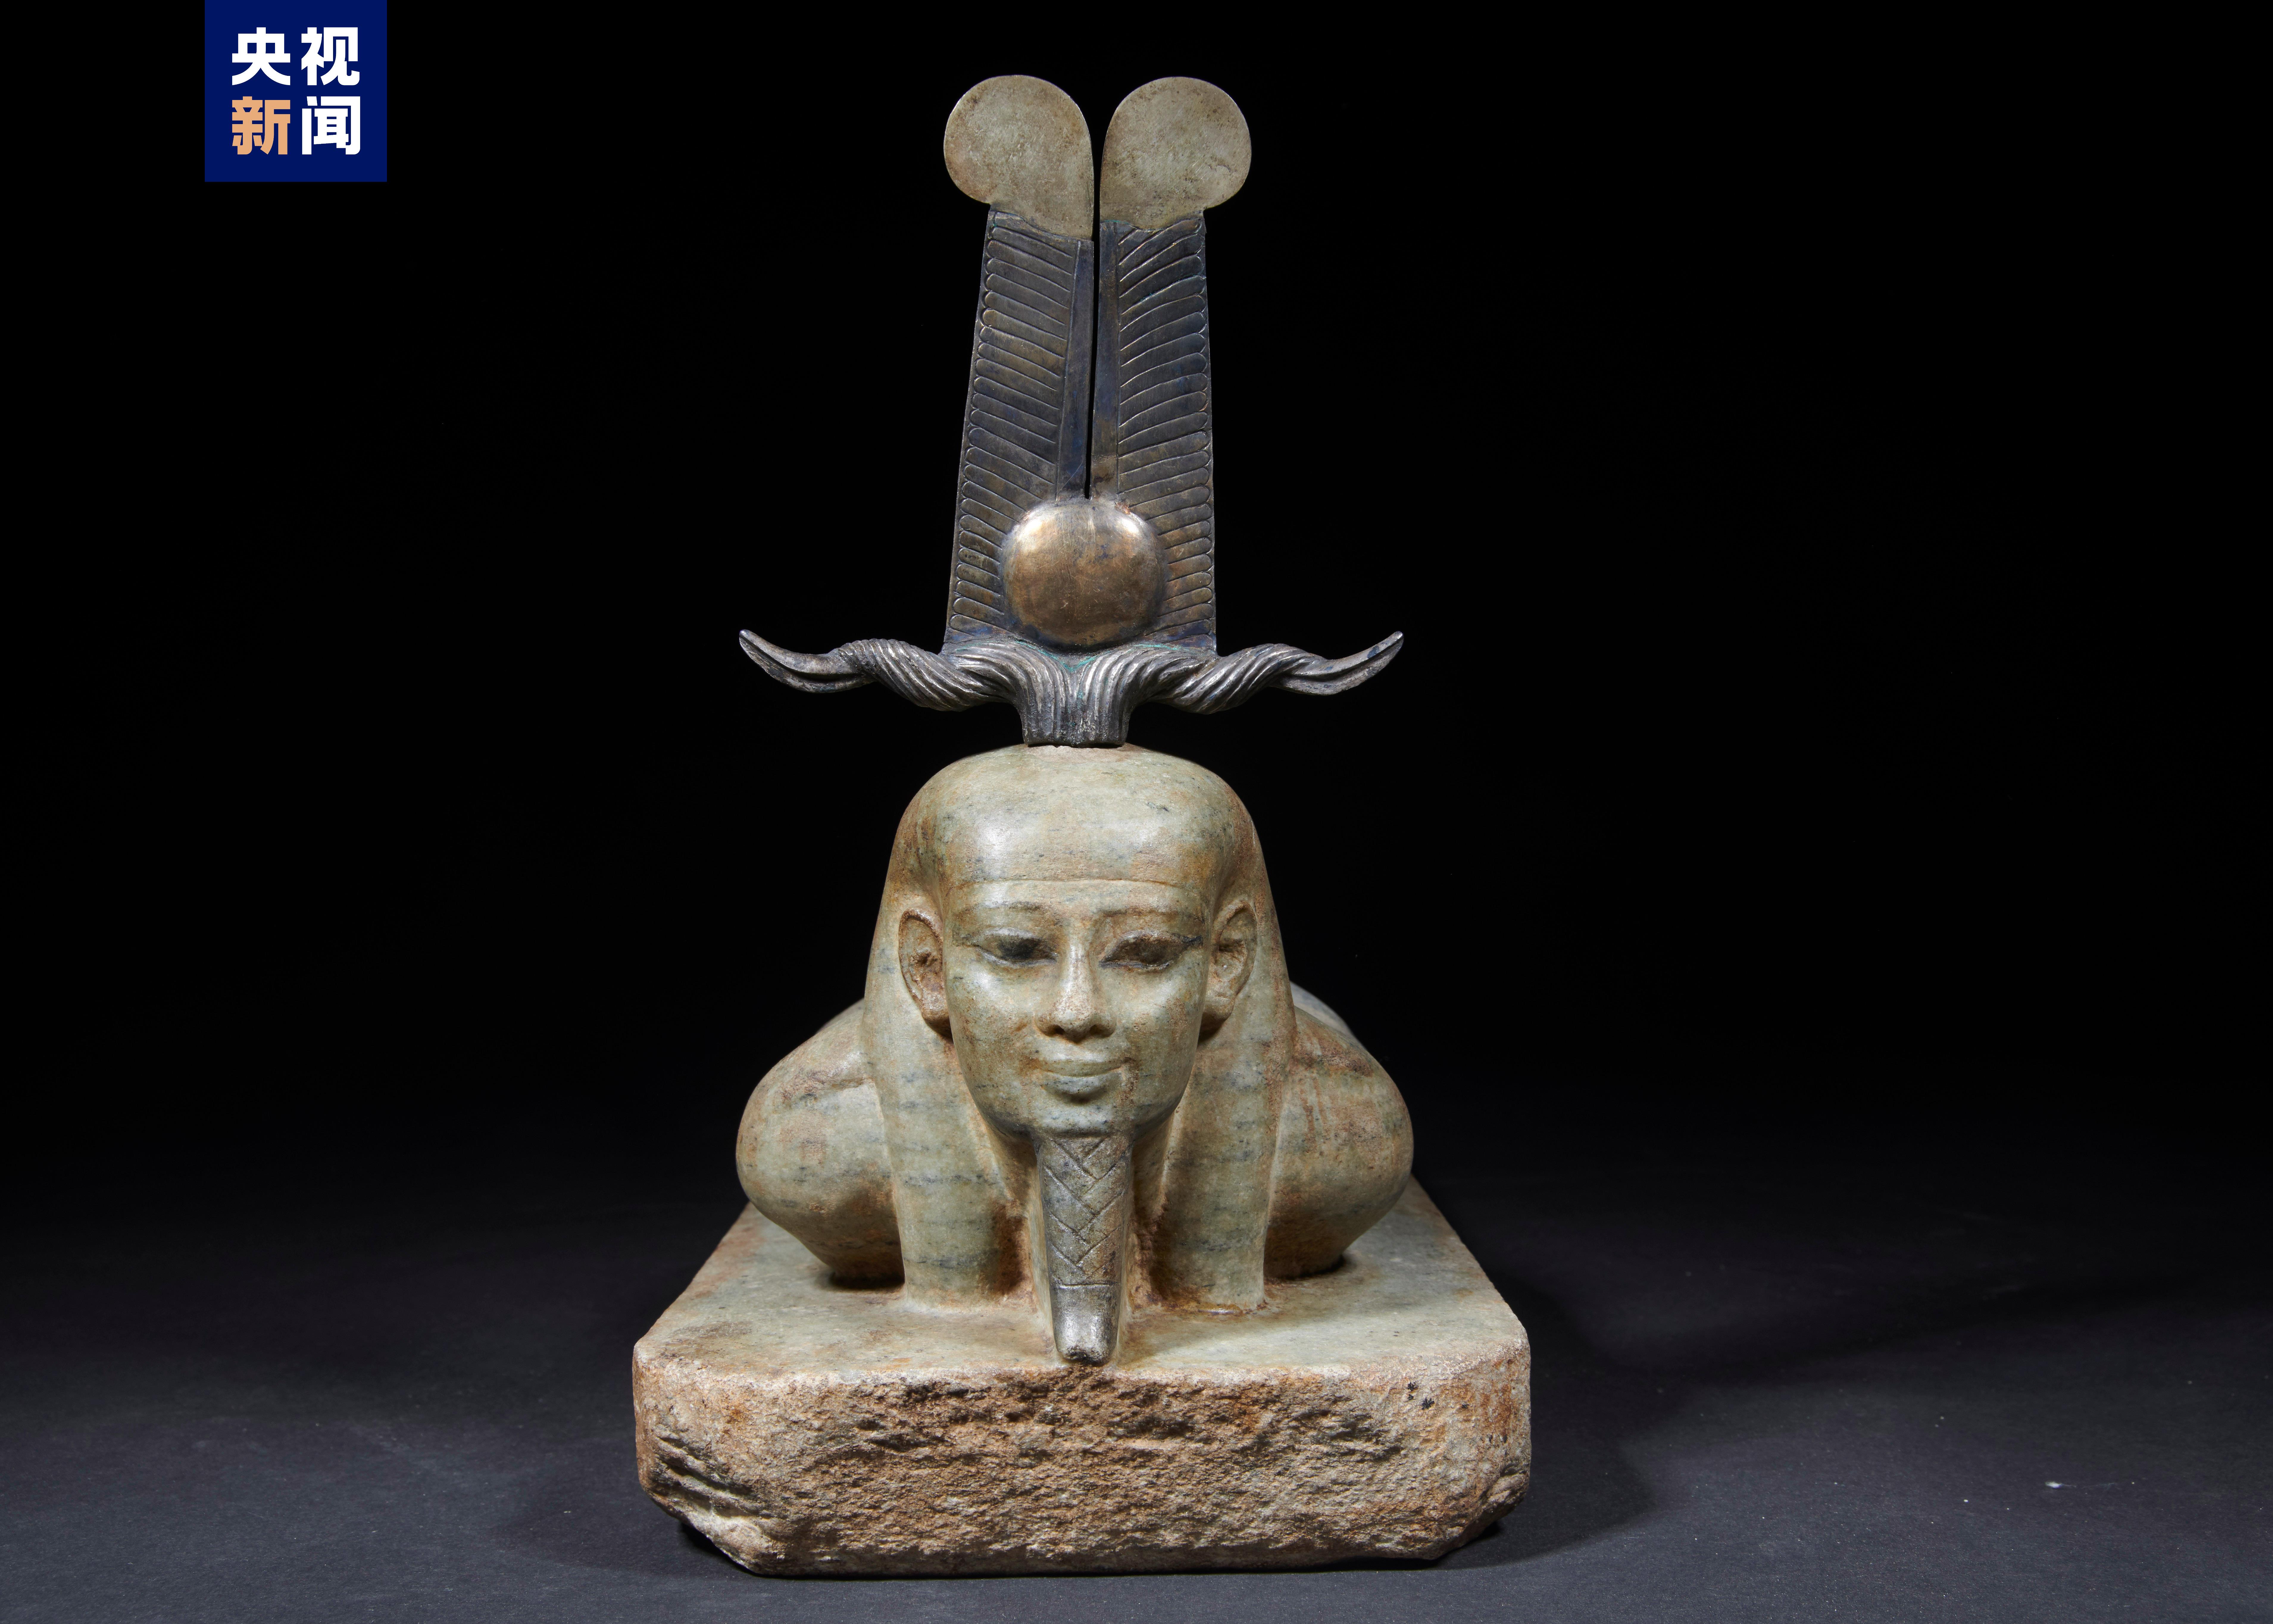 95%以上文物首次来亚洲 这场重磅大展将揭秘古埃及文明